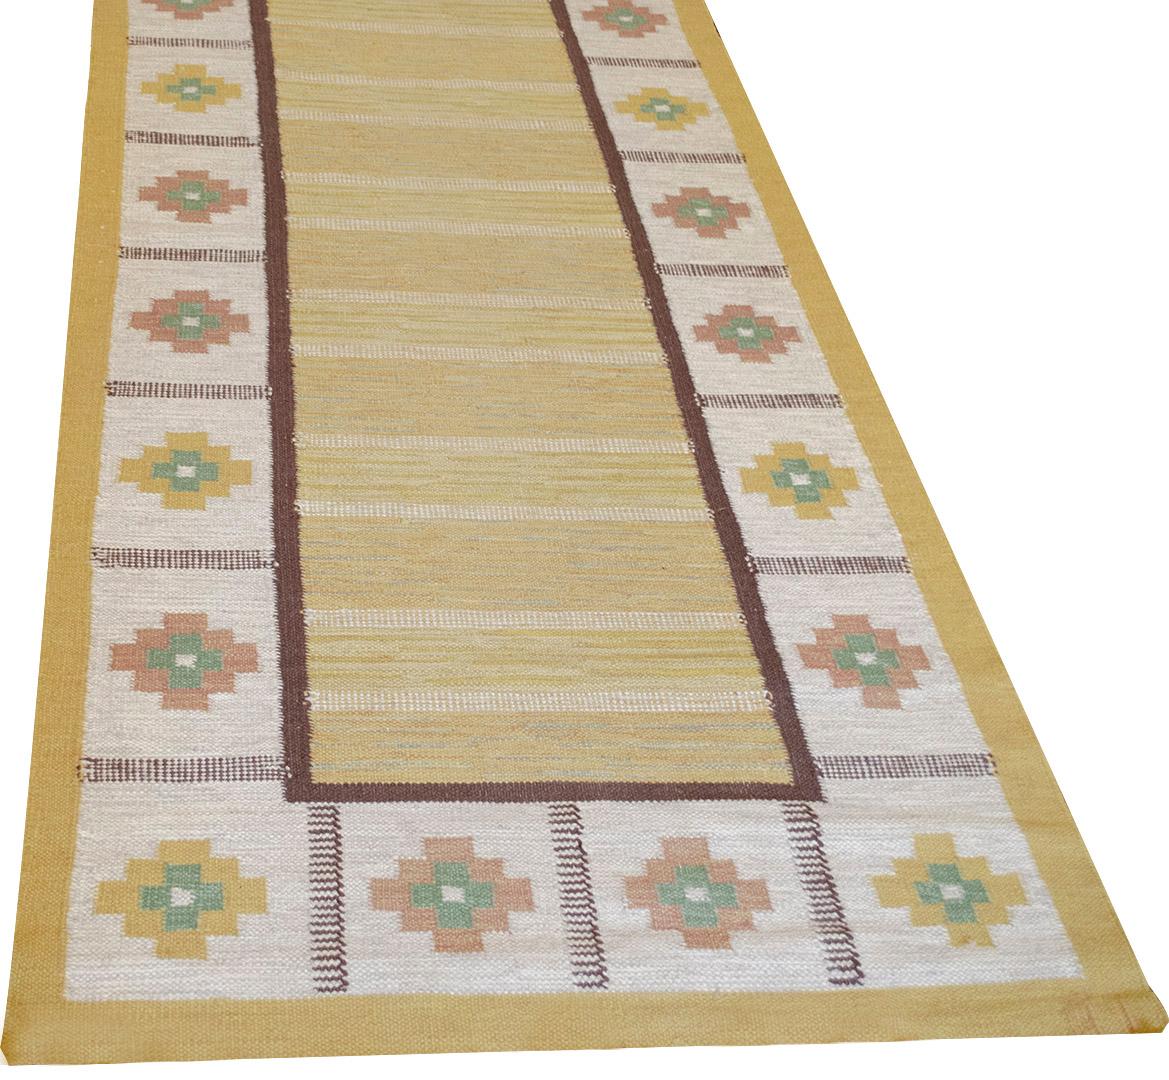 Dieser traditionelle handgewebte schwedische Teppich hat ein gelbes Feld, das von einem schmalen braunen Rechteck umgeben ist, das wiederum von einem elfenbeinfarbenen Feld mit abwechselnd braunen und gelben Rauten und einer gelben Umrandung umgeben